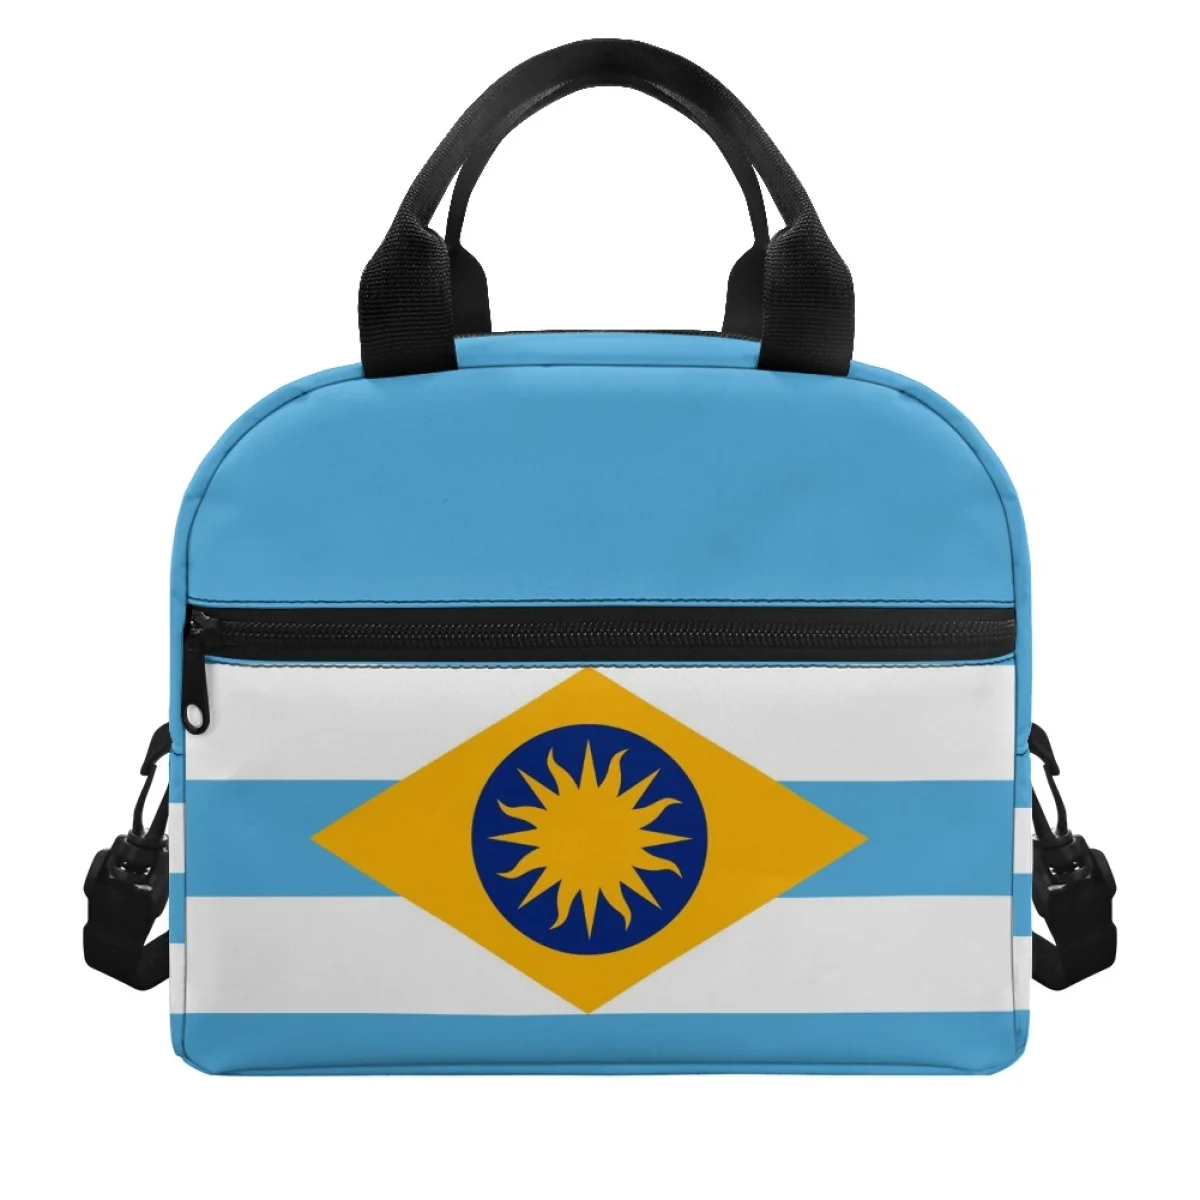 FORUDESIGNS Креативная изолированная сумка с флагом Аргентины, ланч-бокс, удобный ланч-бокс для школьников, легкая практичная сумка Lonchera